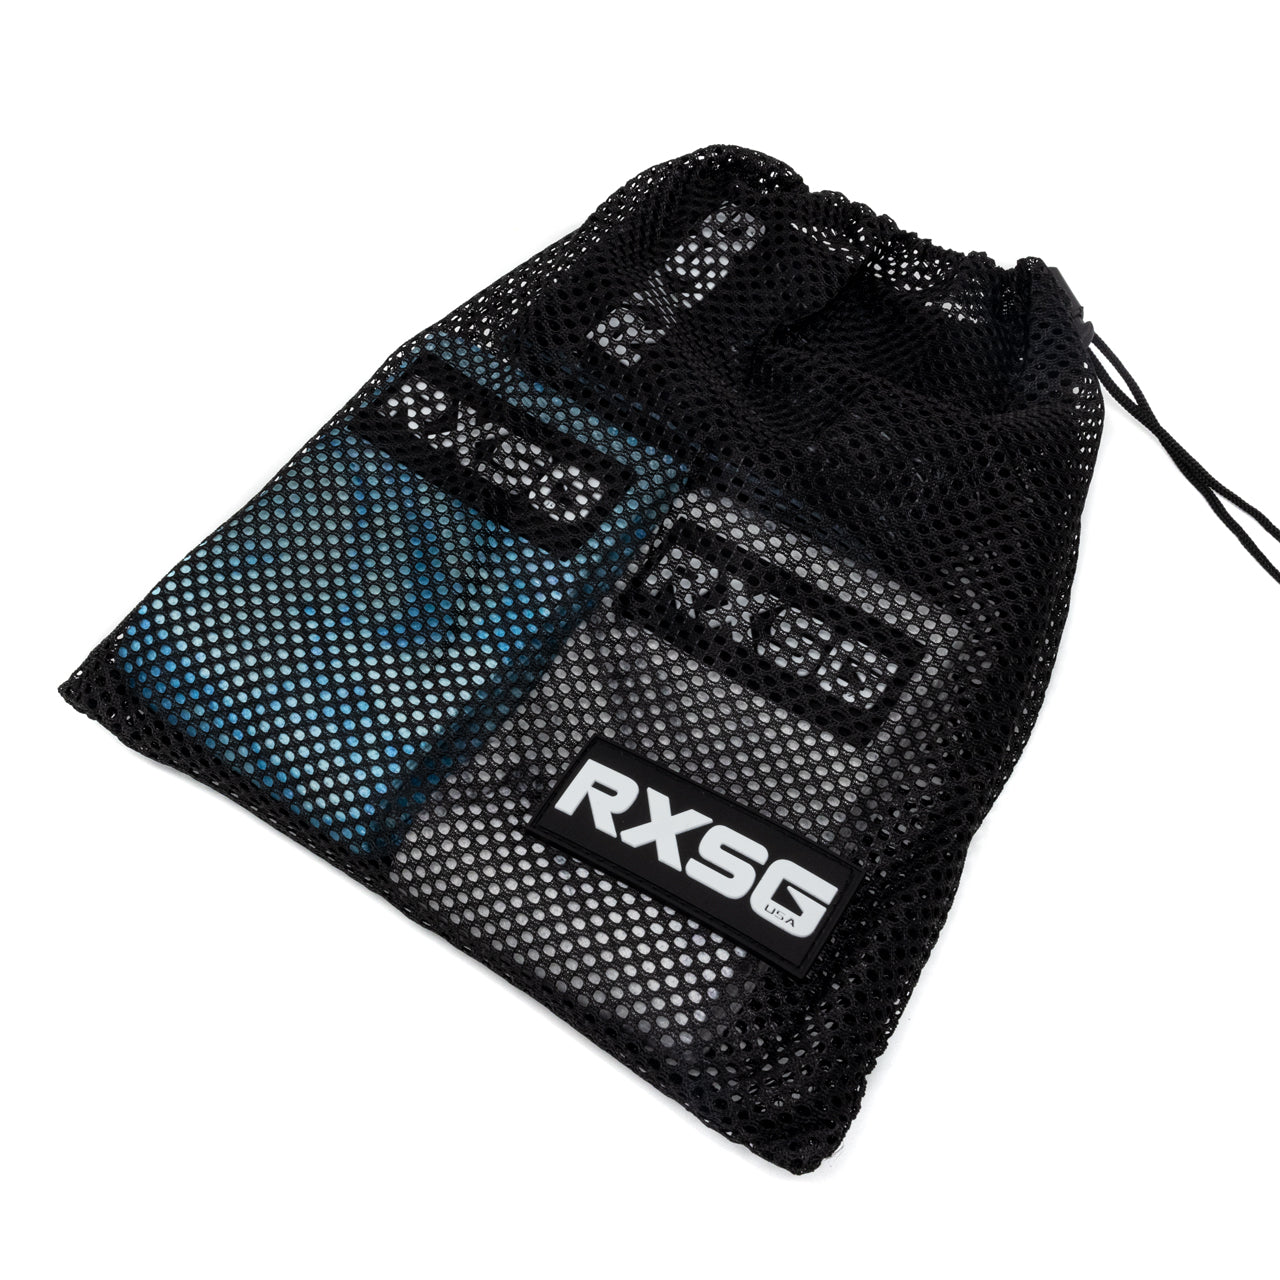 RXSG Booty Bands Bundle inside mesh bag